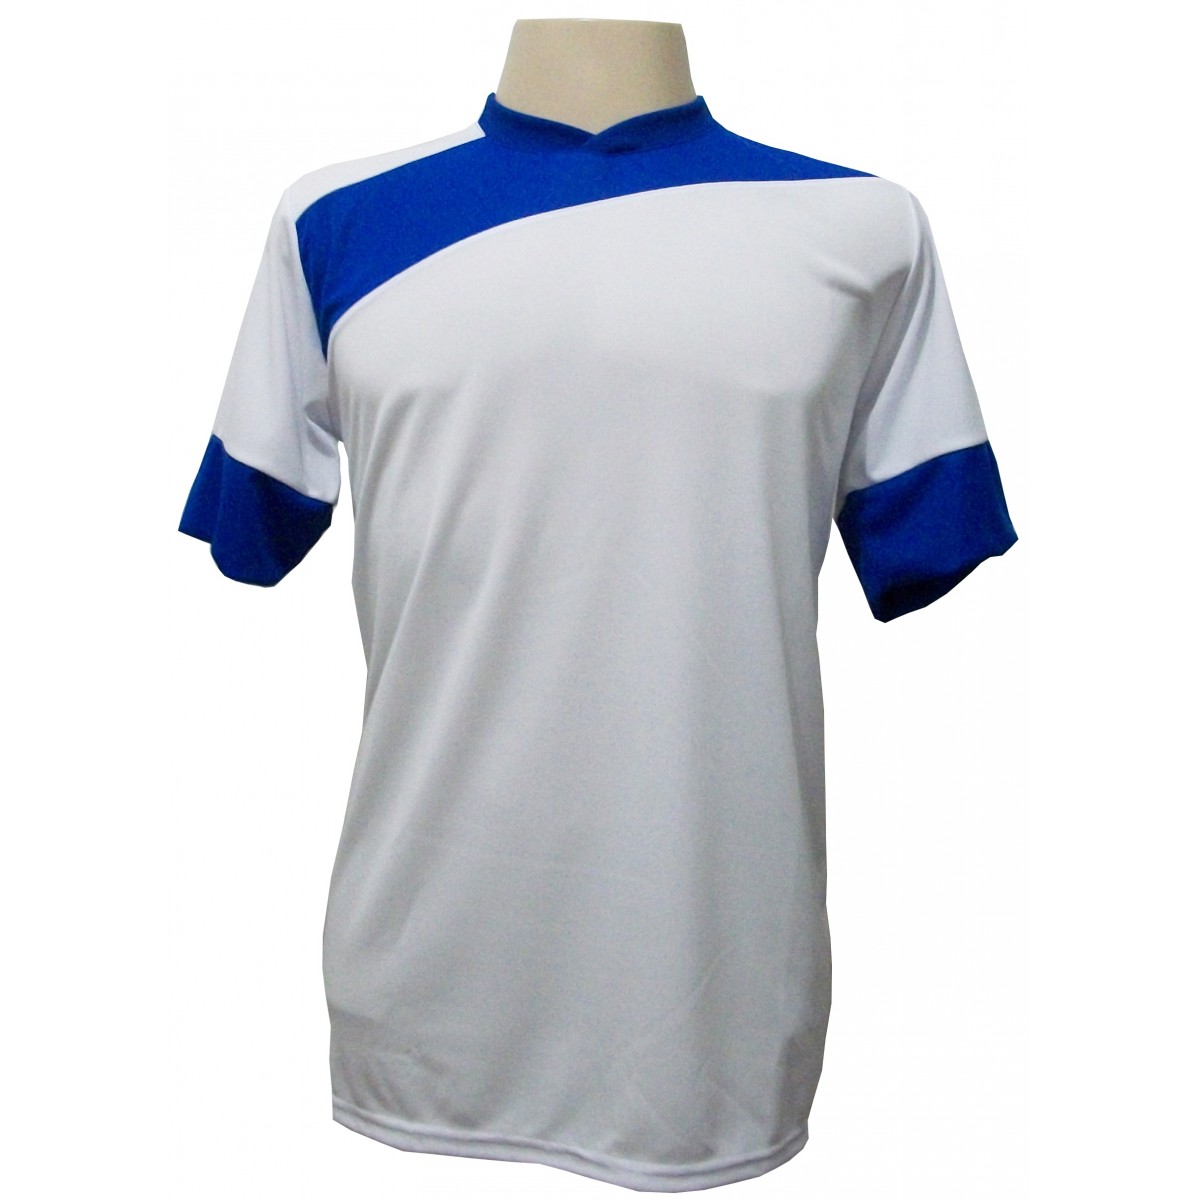 Uniforme Esportivo com 14 camisas modelo Sporting Branco/Royal + 14 calções modelo Madrid + 1 Goleiro + Brindes